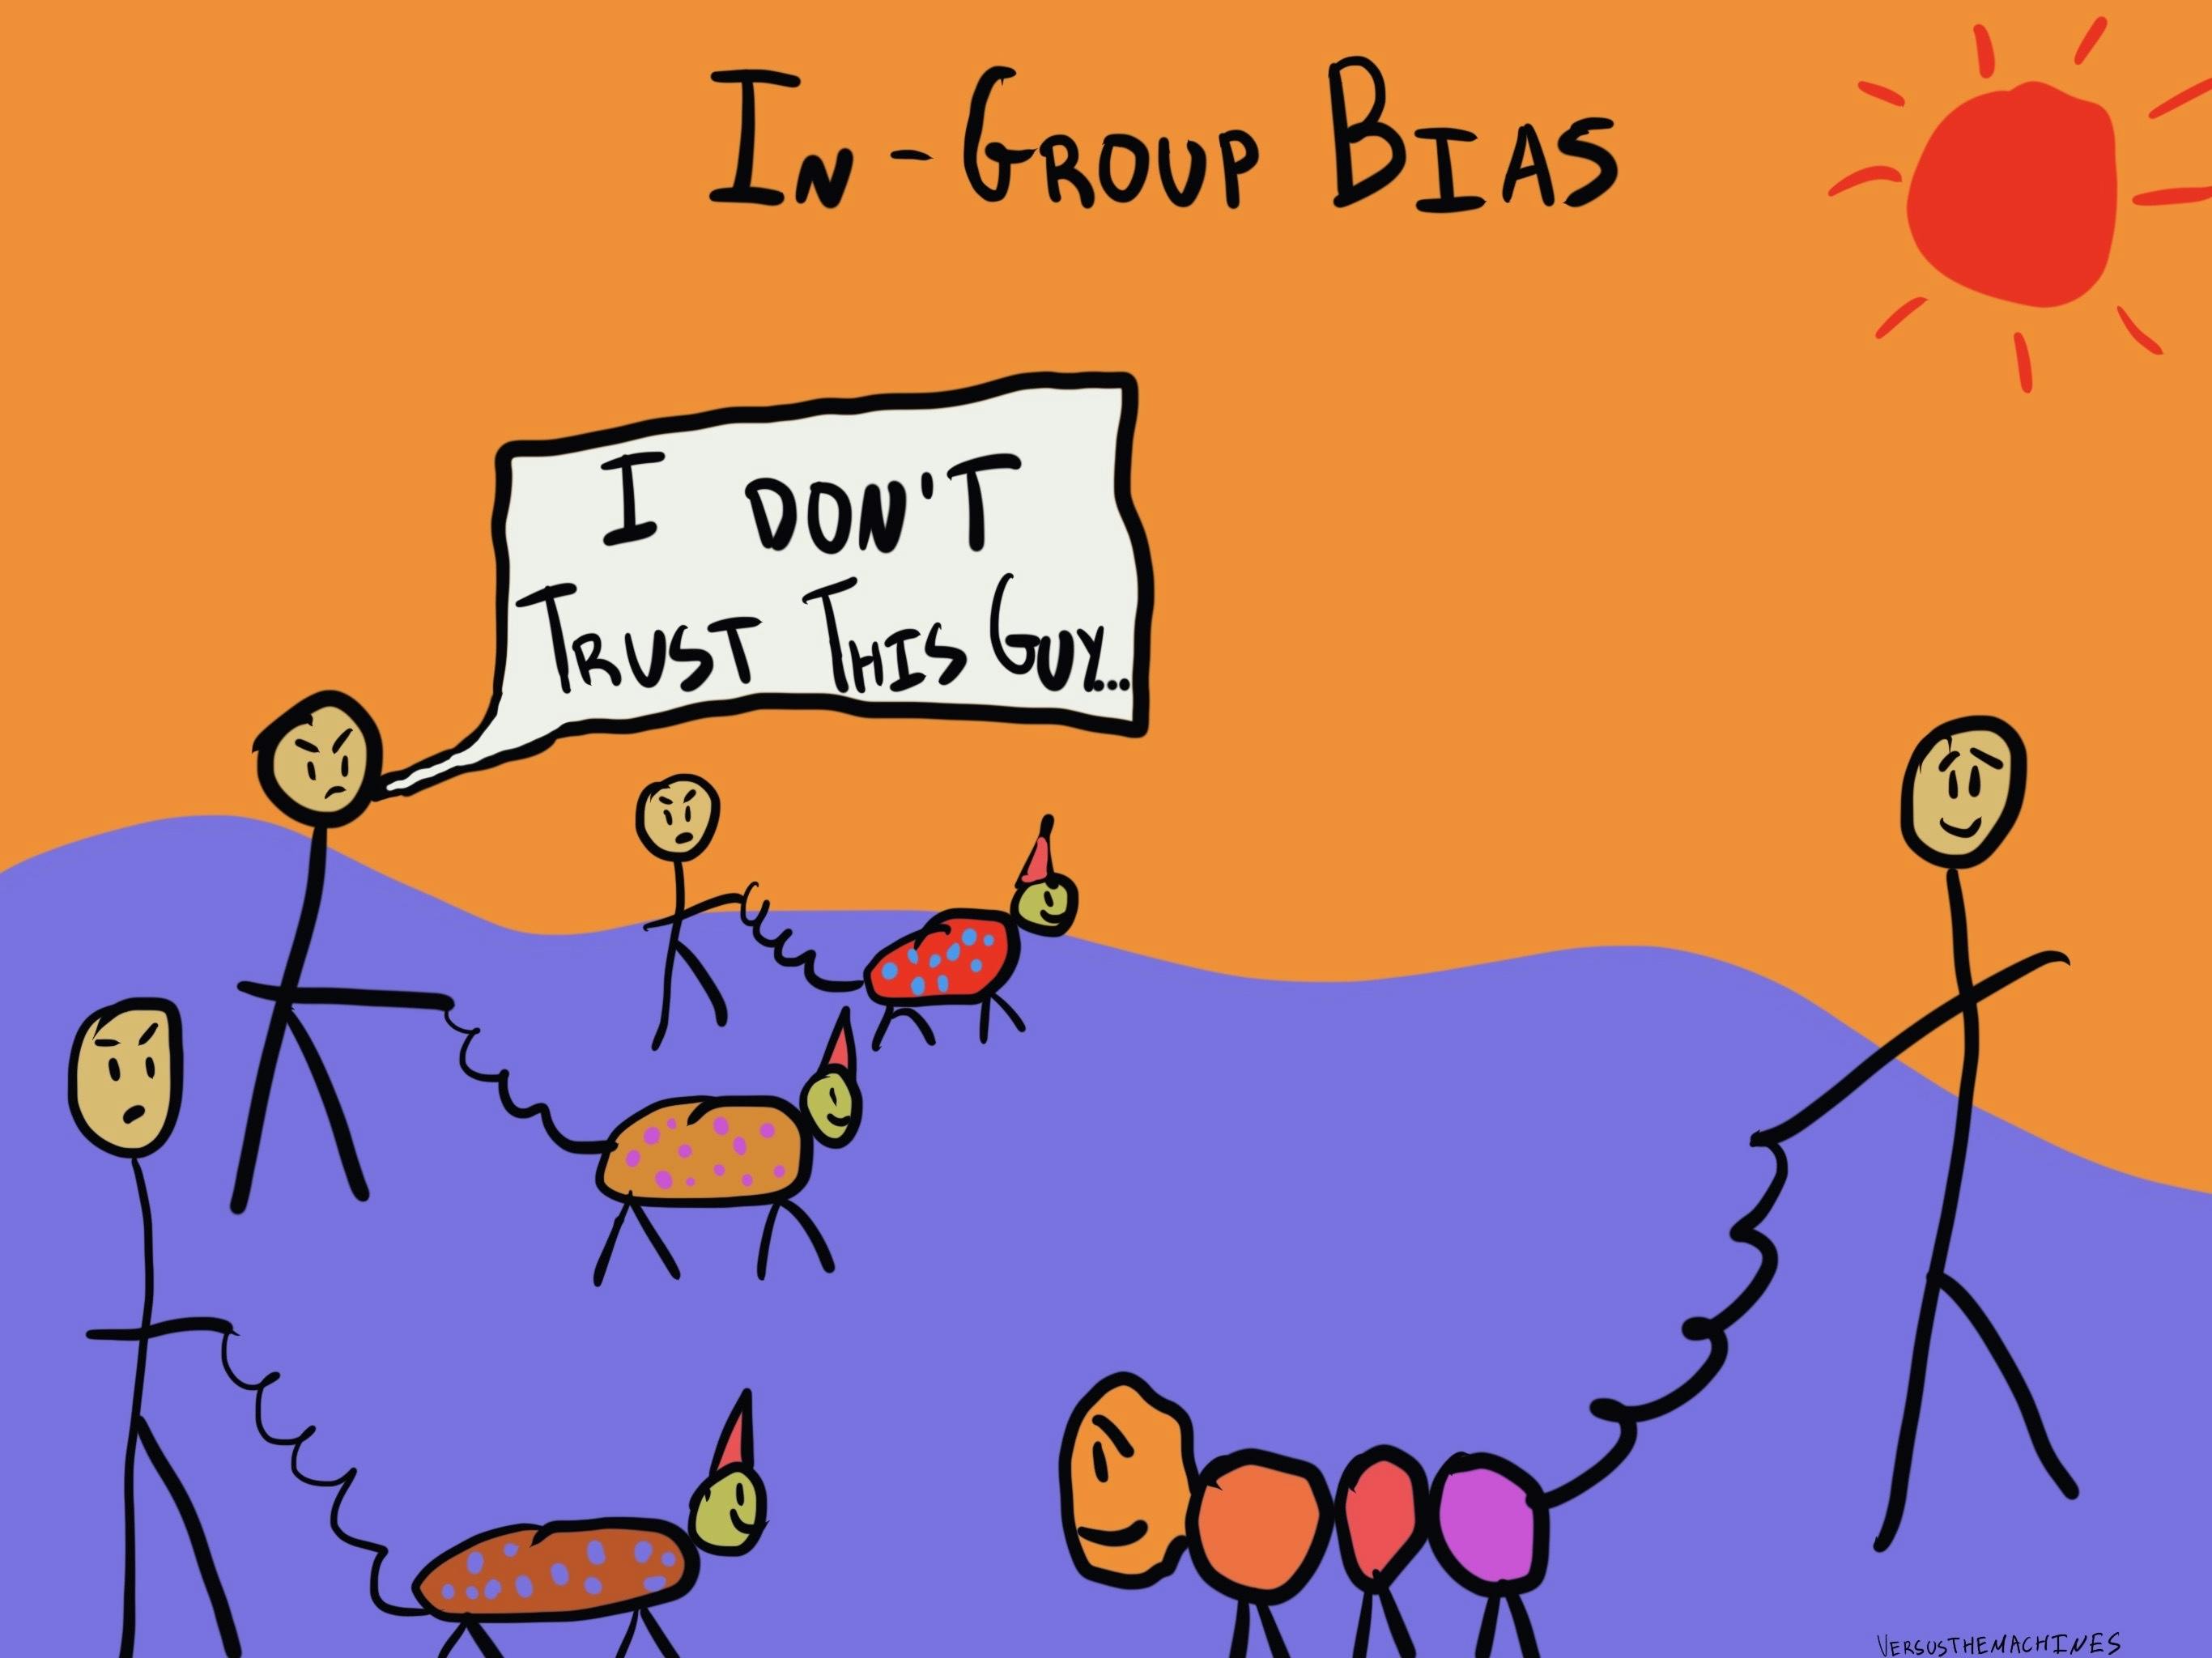 In-group bias